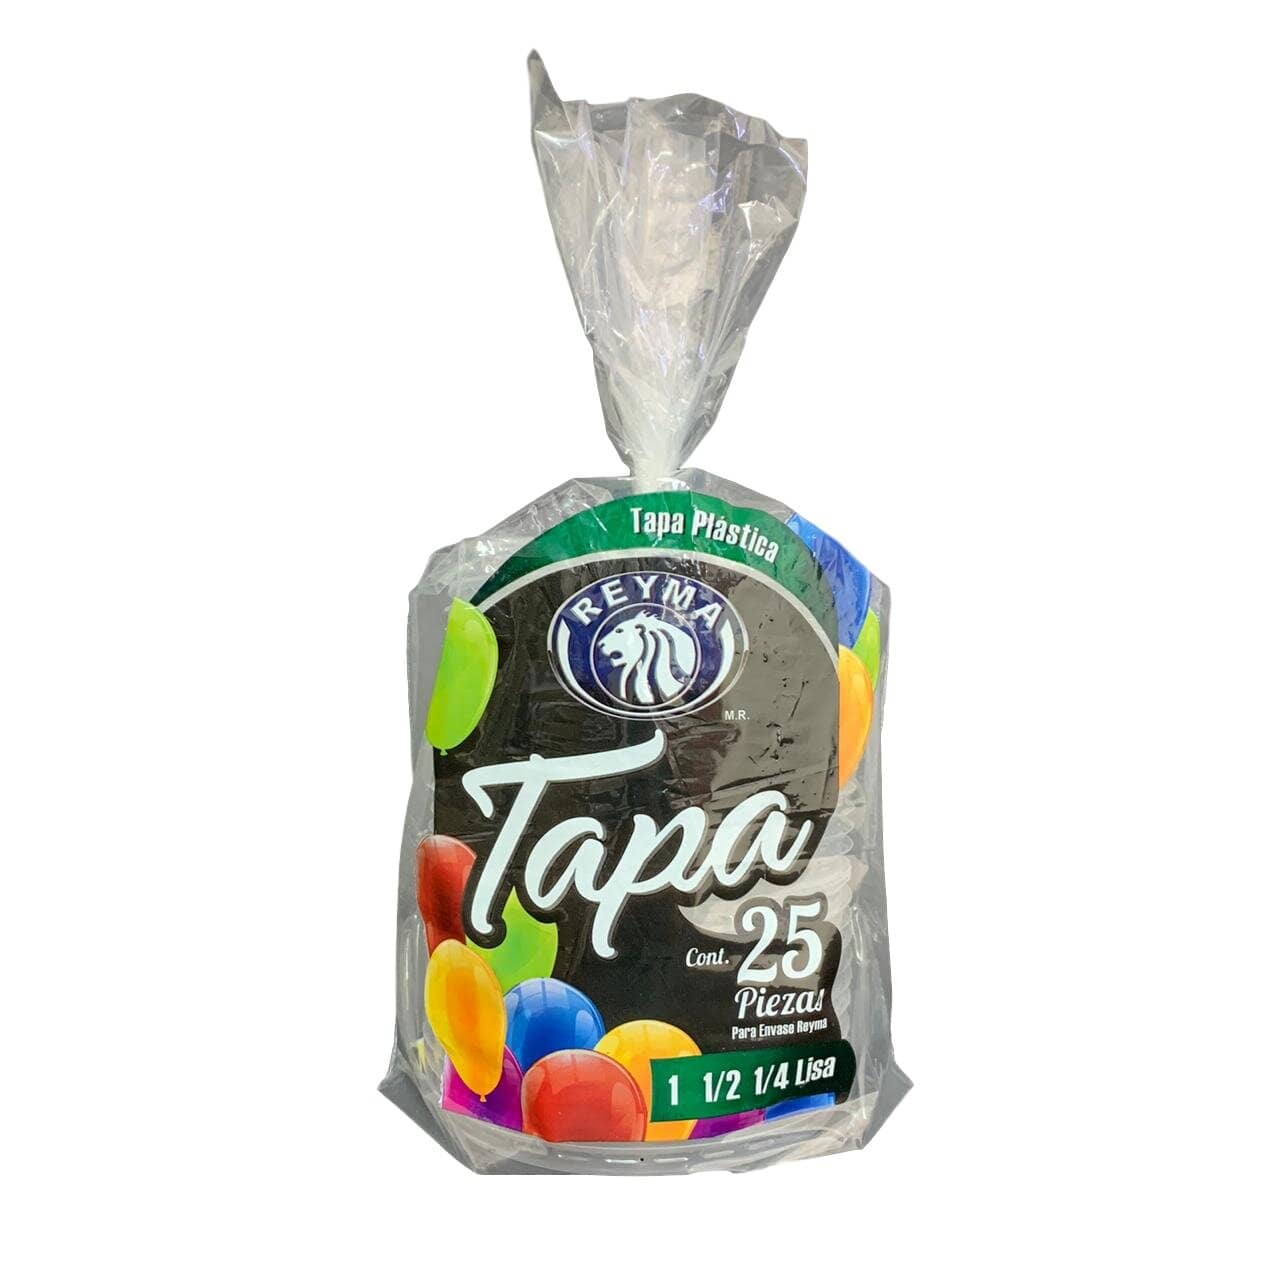 Plasticos max - VASO BACHELOR CON TAPA Y POPOTE $13.00